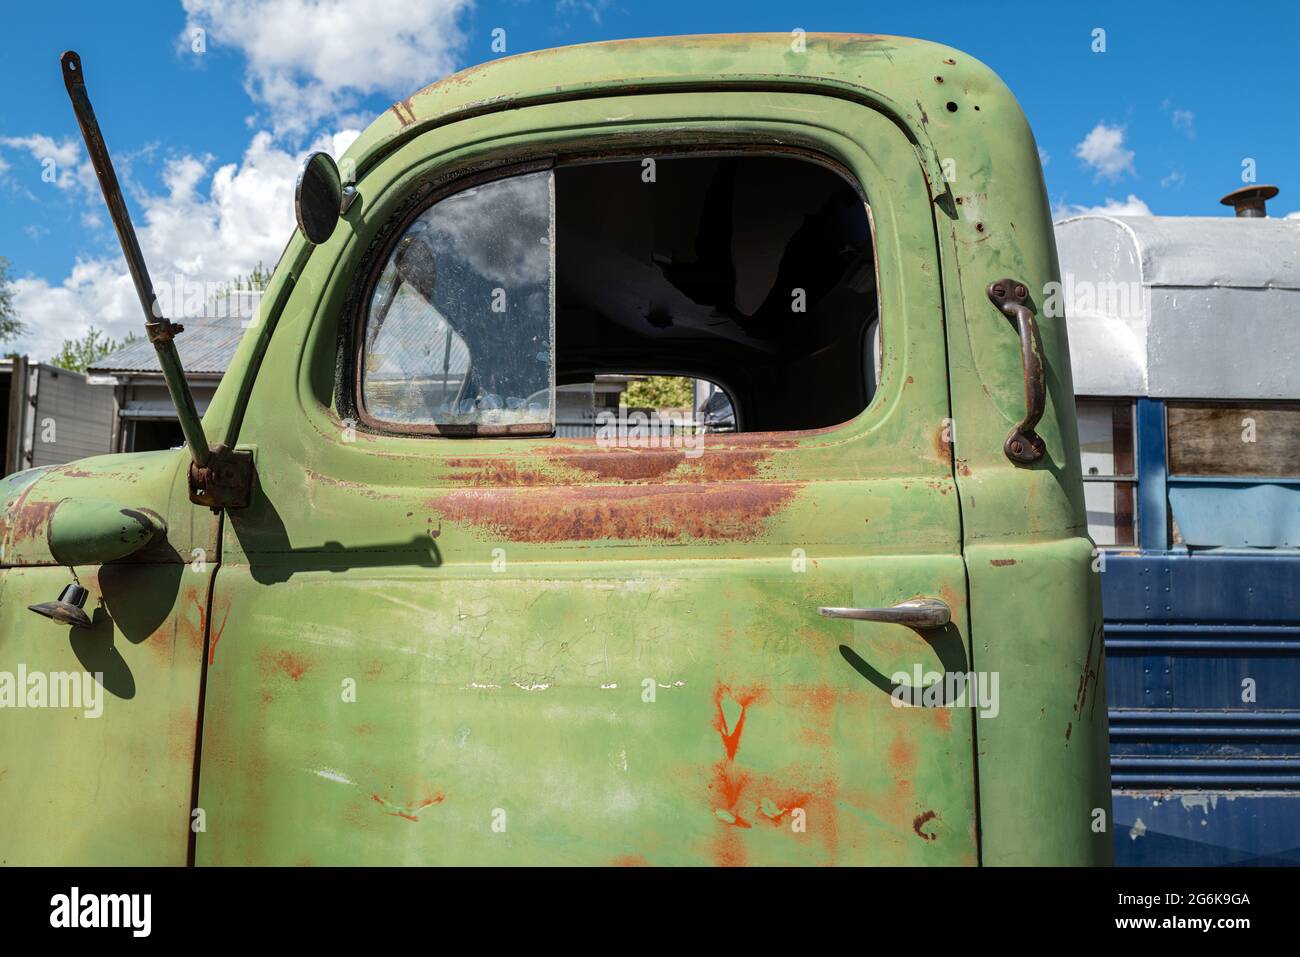 La cabine d'un camion antique vert Banque D'Images